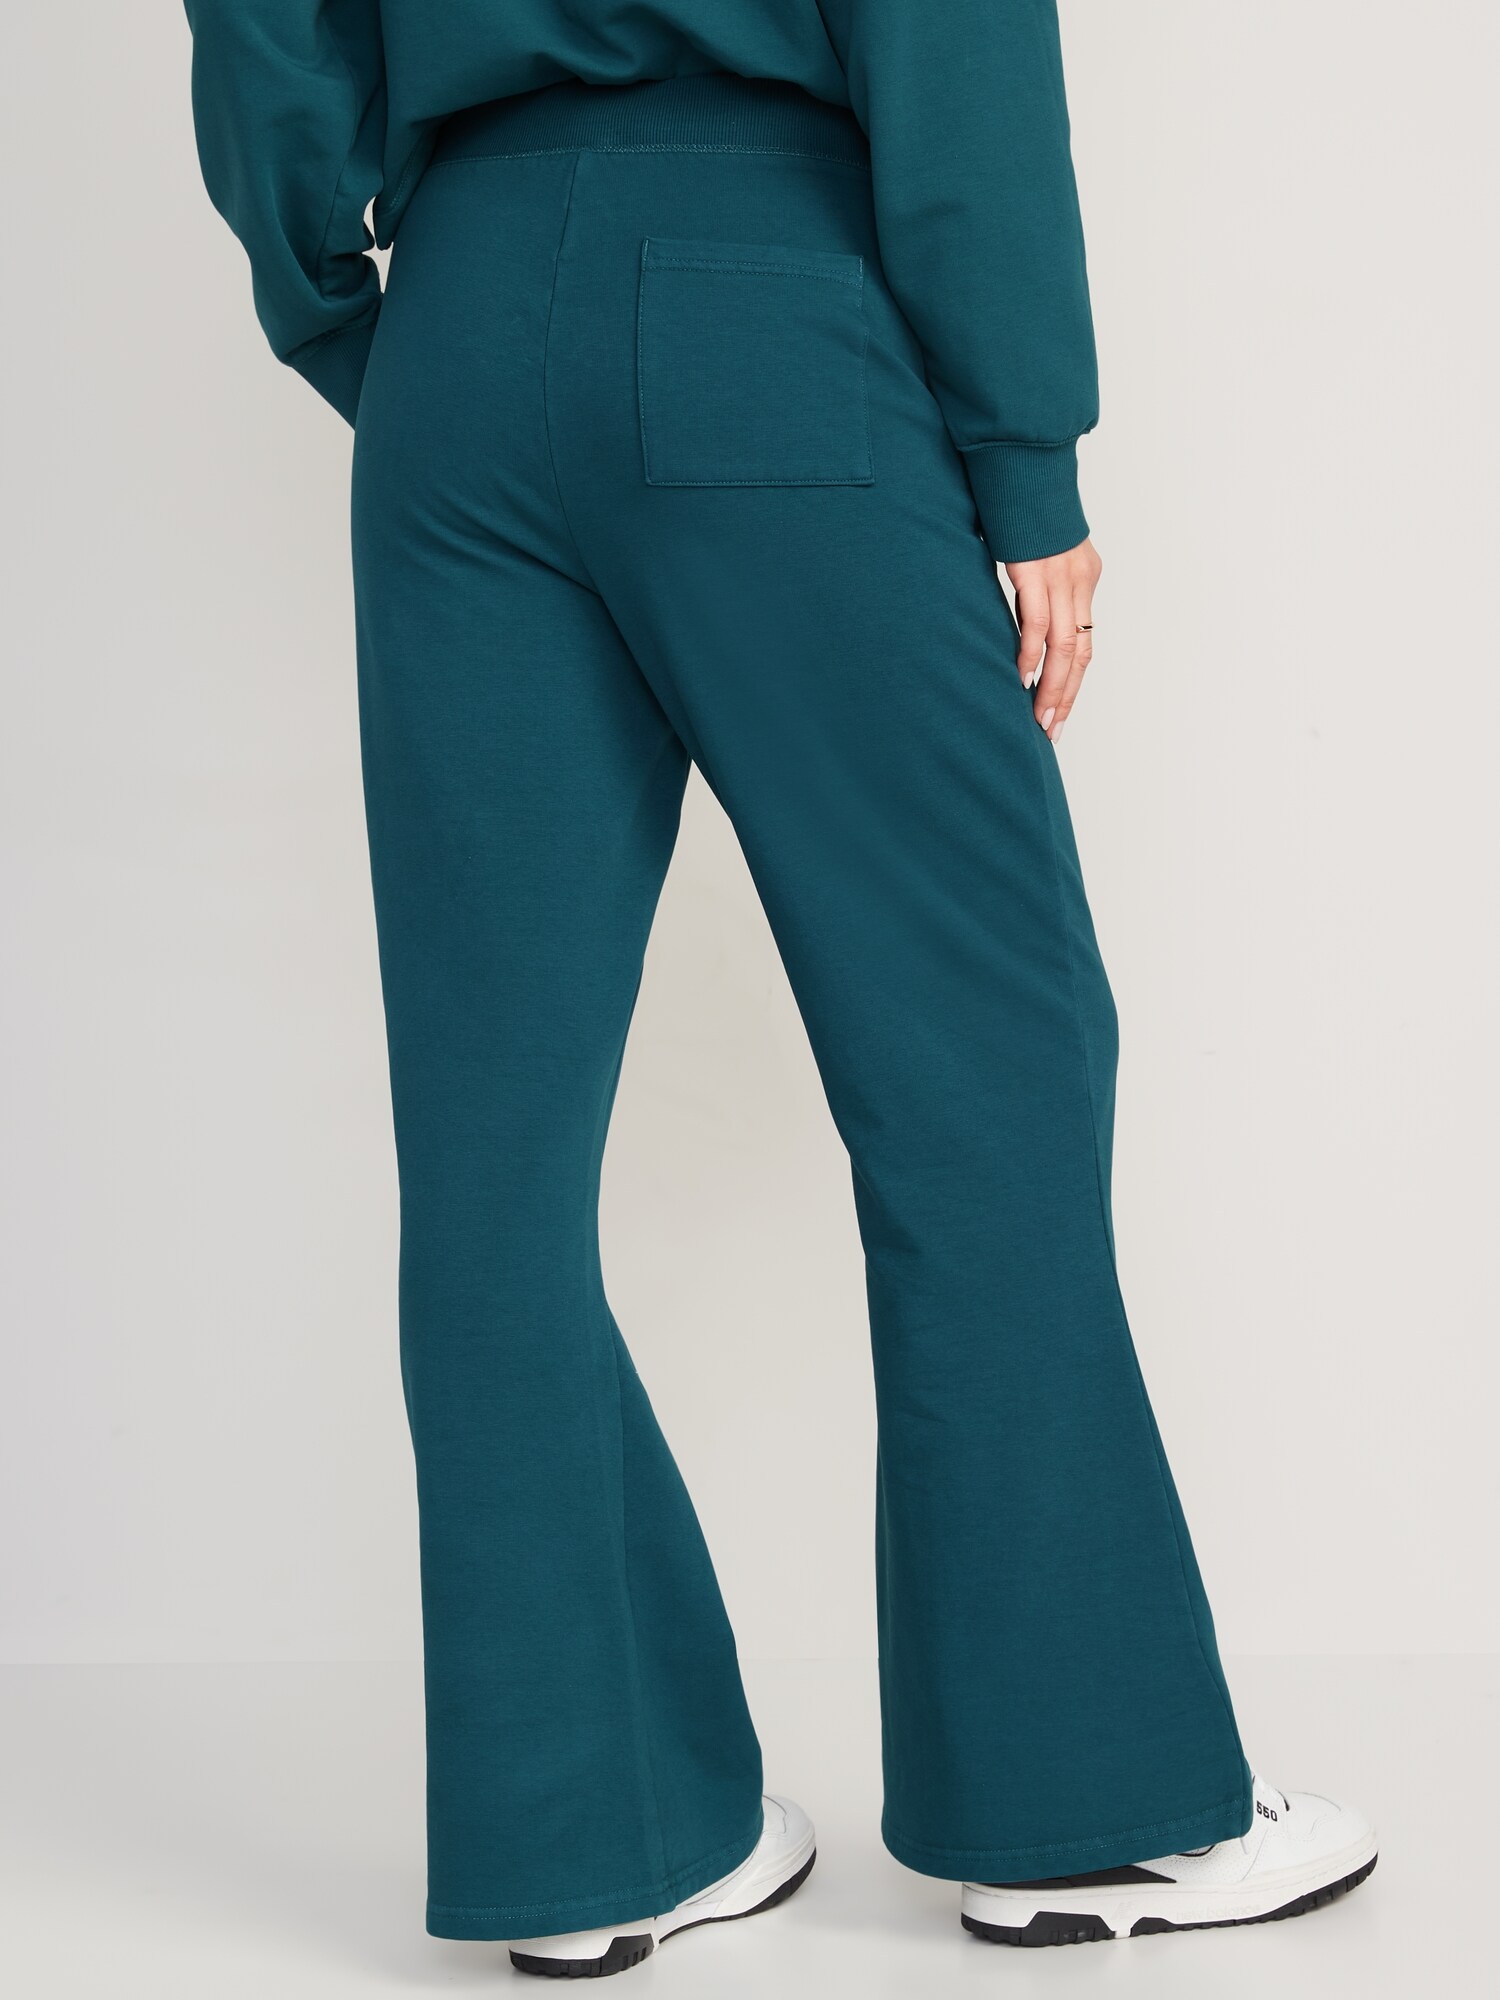 Wearever Fleece Relaxed Women's Tall Sweatpants in Emerald